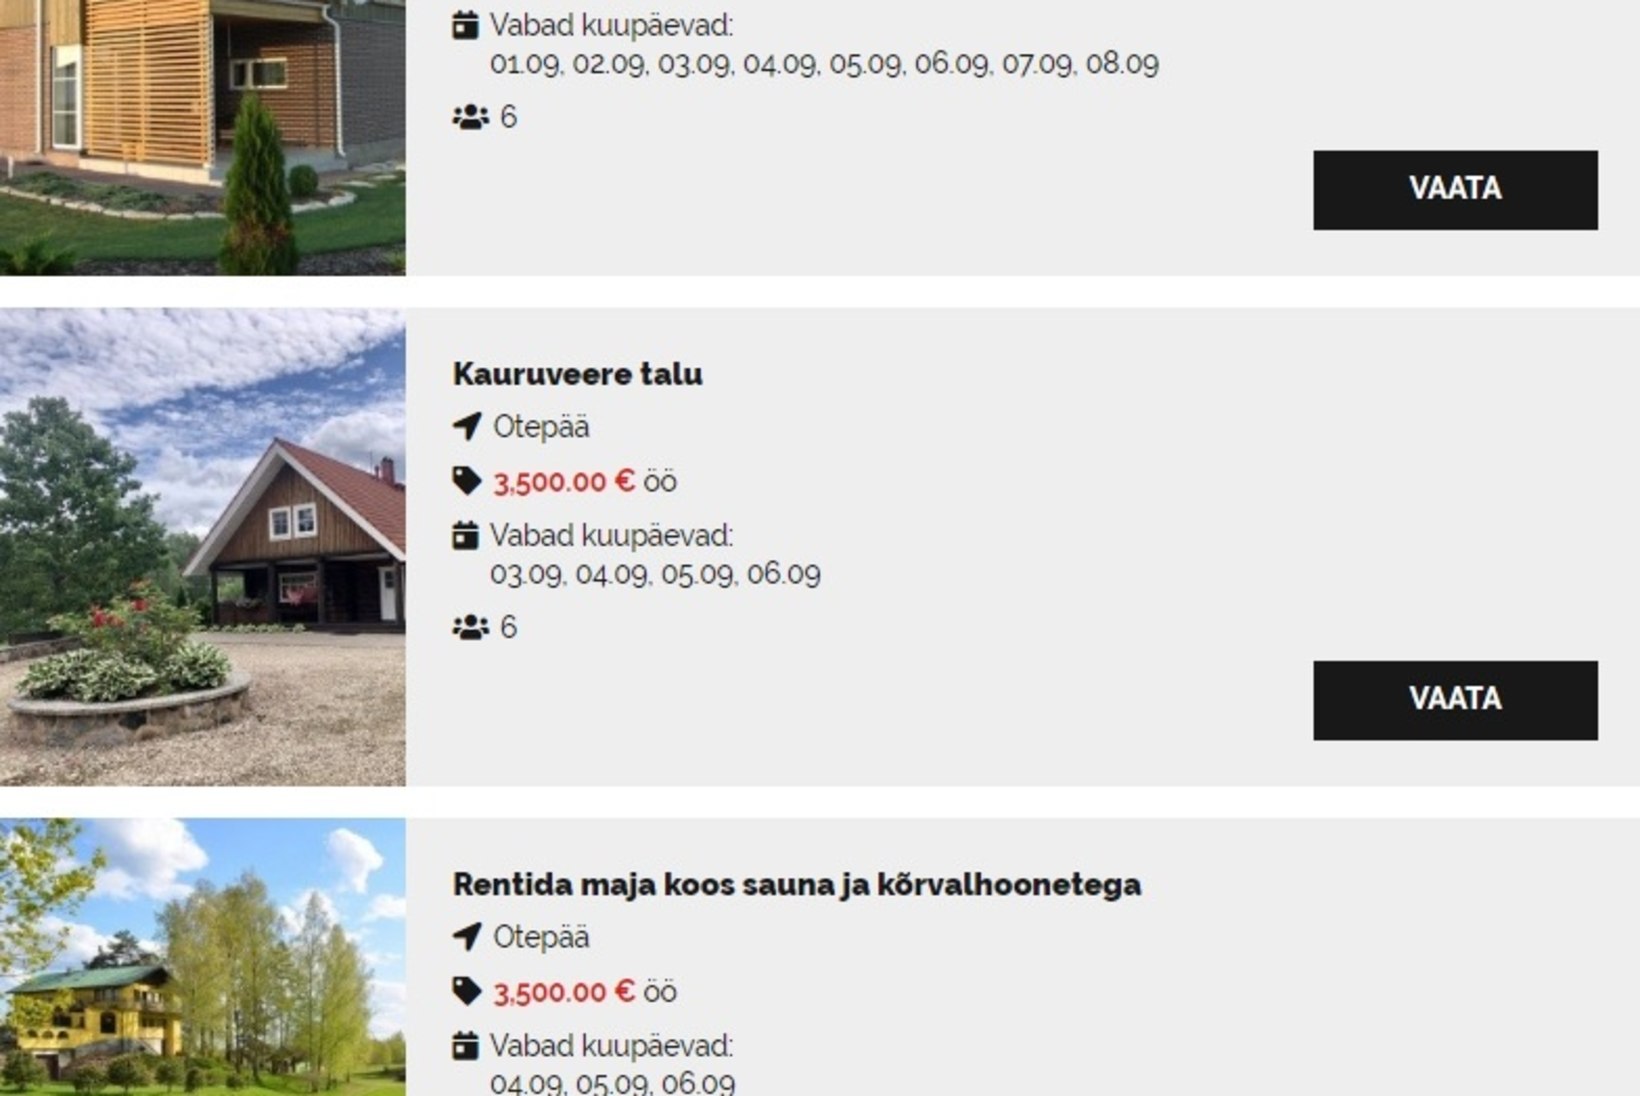 PÕRR-PÕRR JA RAHA TULEB?! Ralli ajas eestlased ahneks: nädalavahetus korteris – 4000 eurot, majas 8000 eurot!